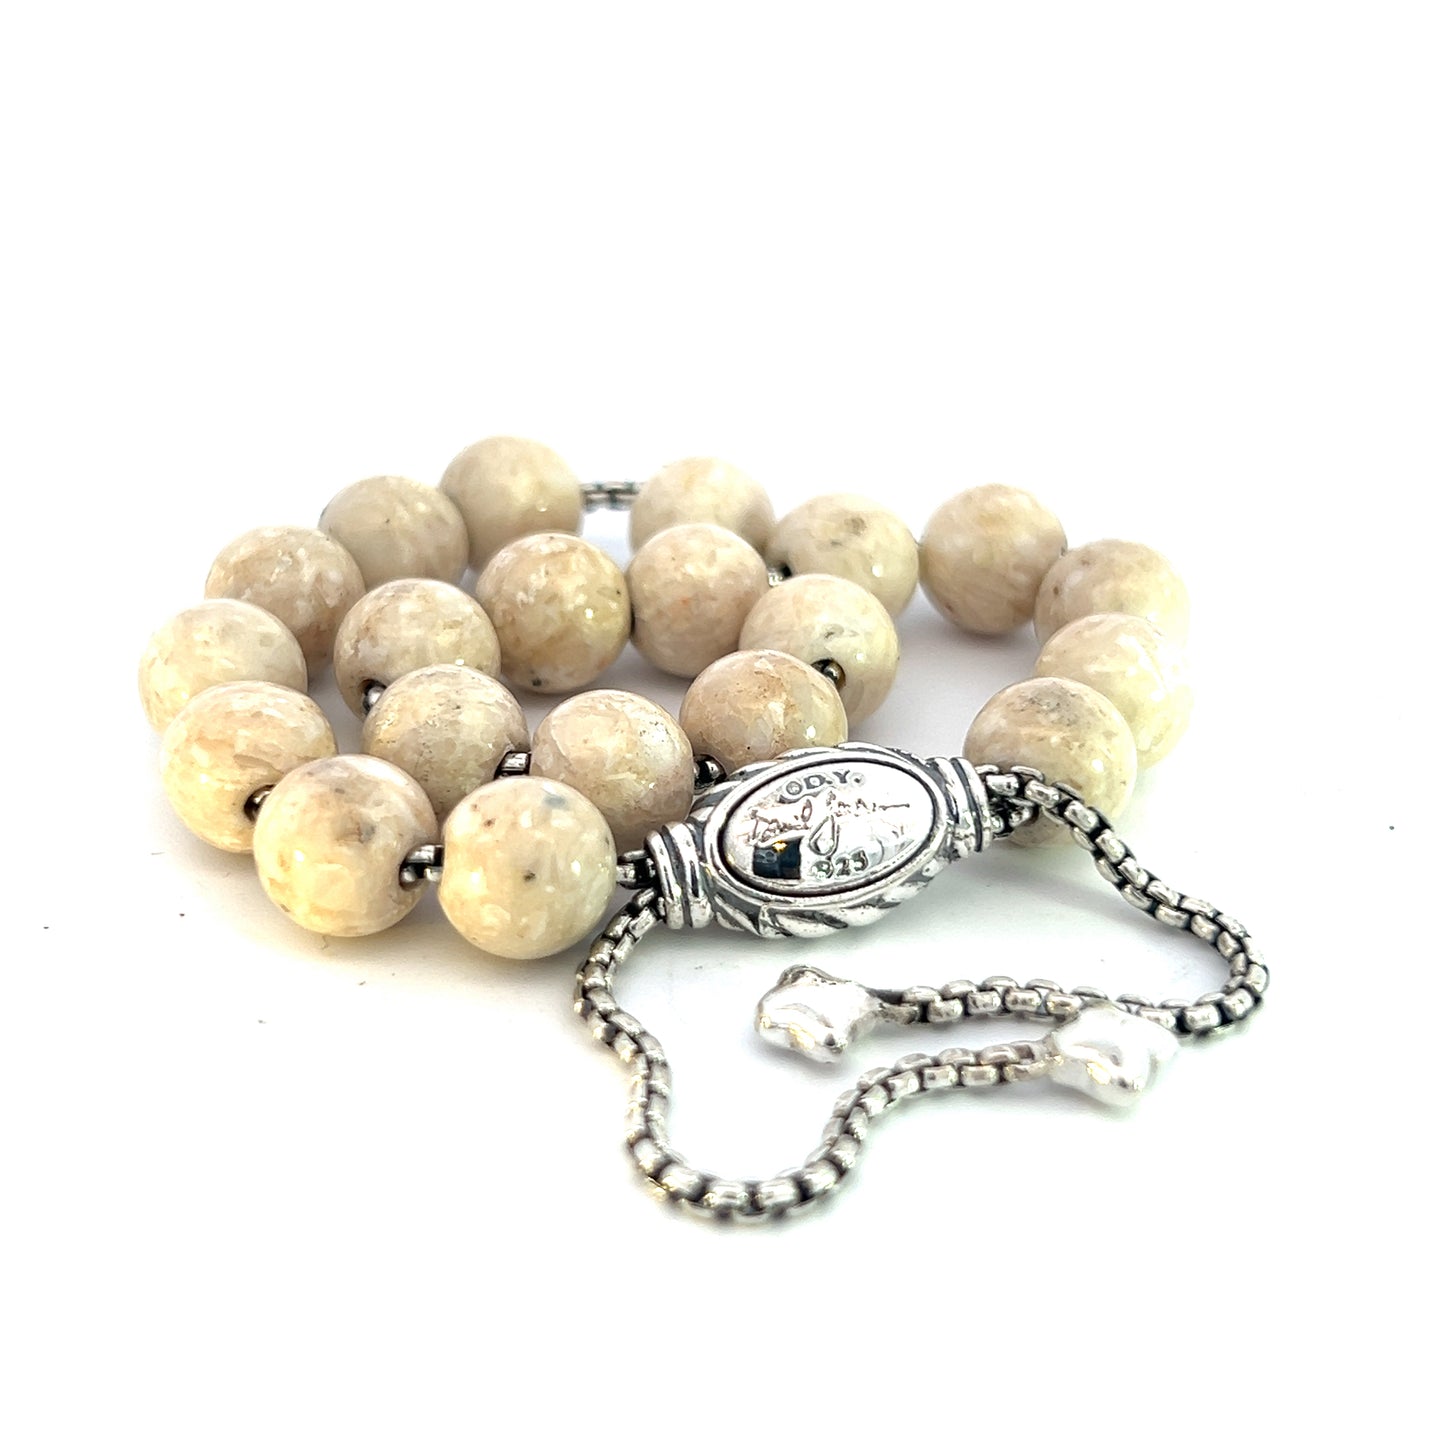 David Yurman Authentic Estate River Stone Spiritual Beads Bracelet 6.6 - 8.5" Silver 8 mm DY452